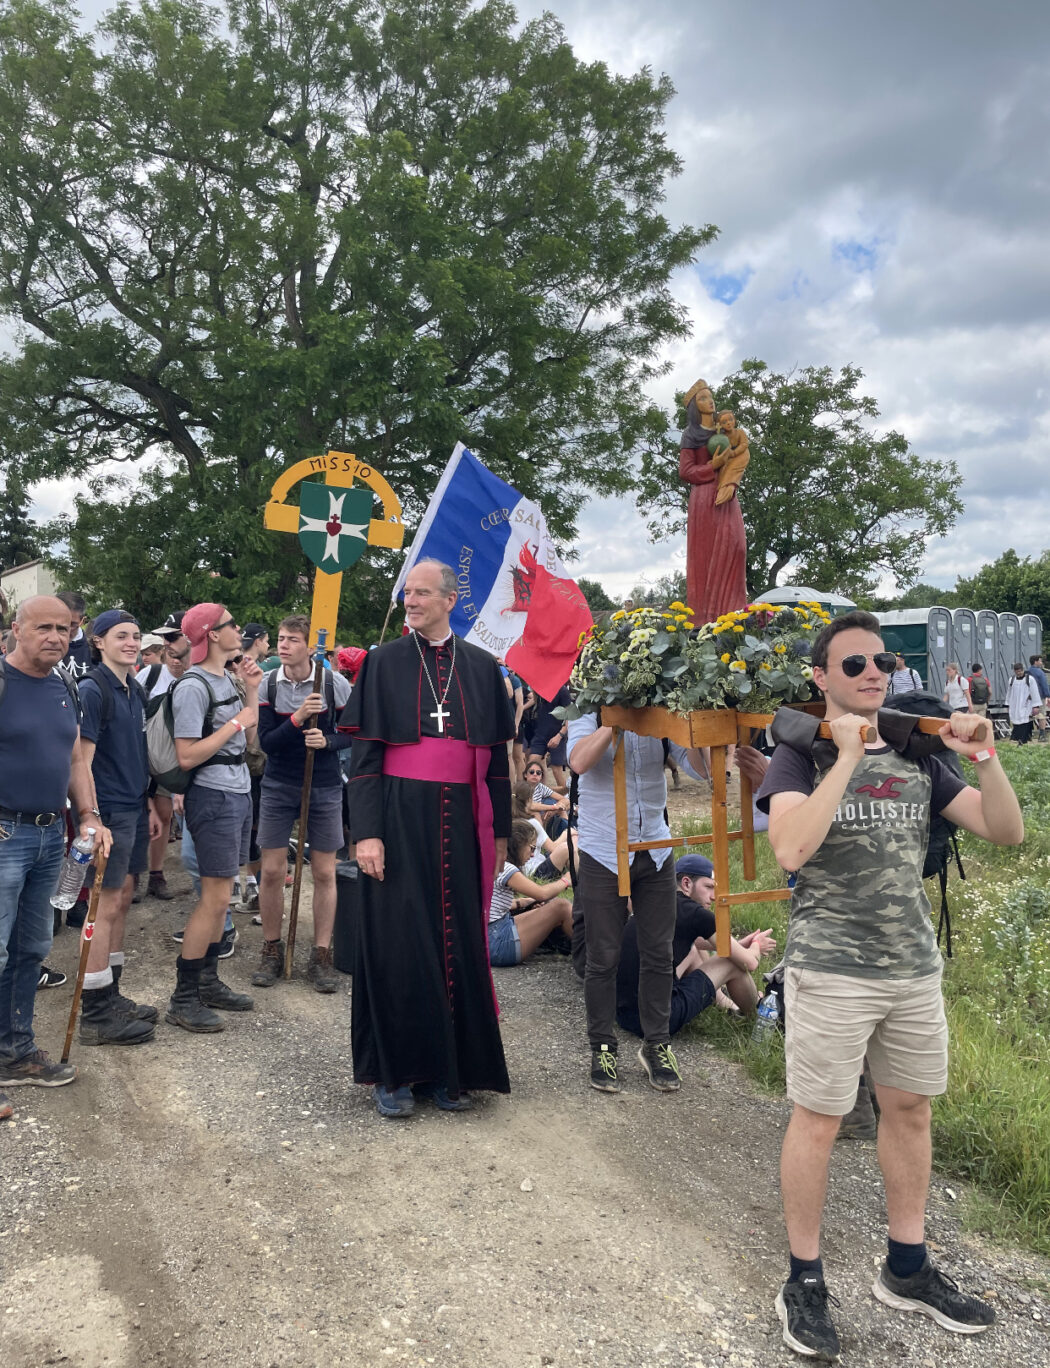 L’évêque de Chartres marche avec les pèlerins